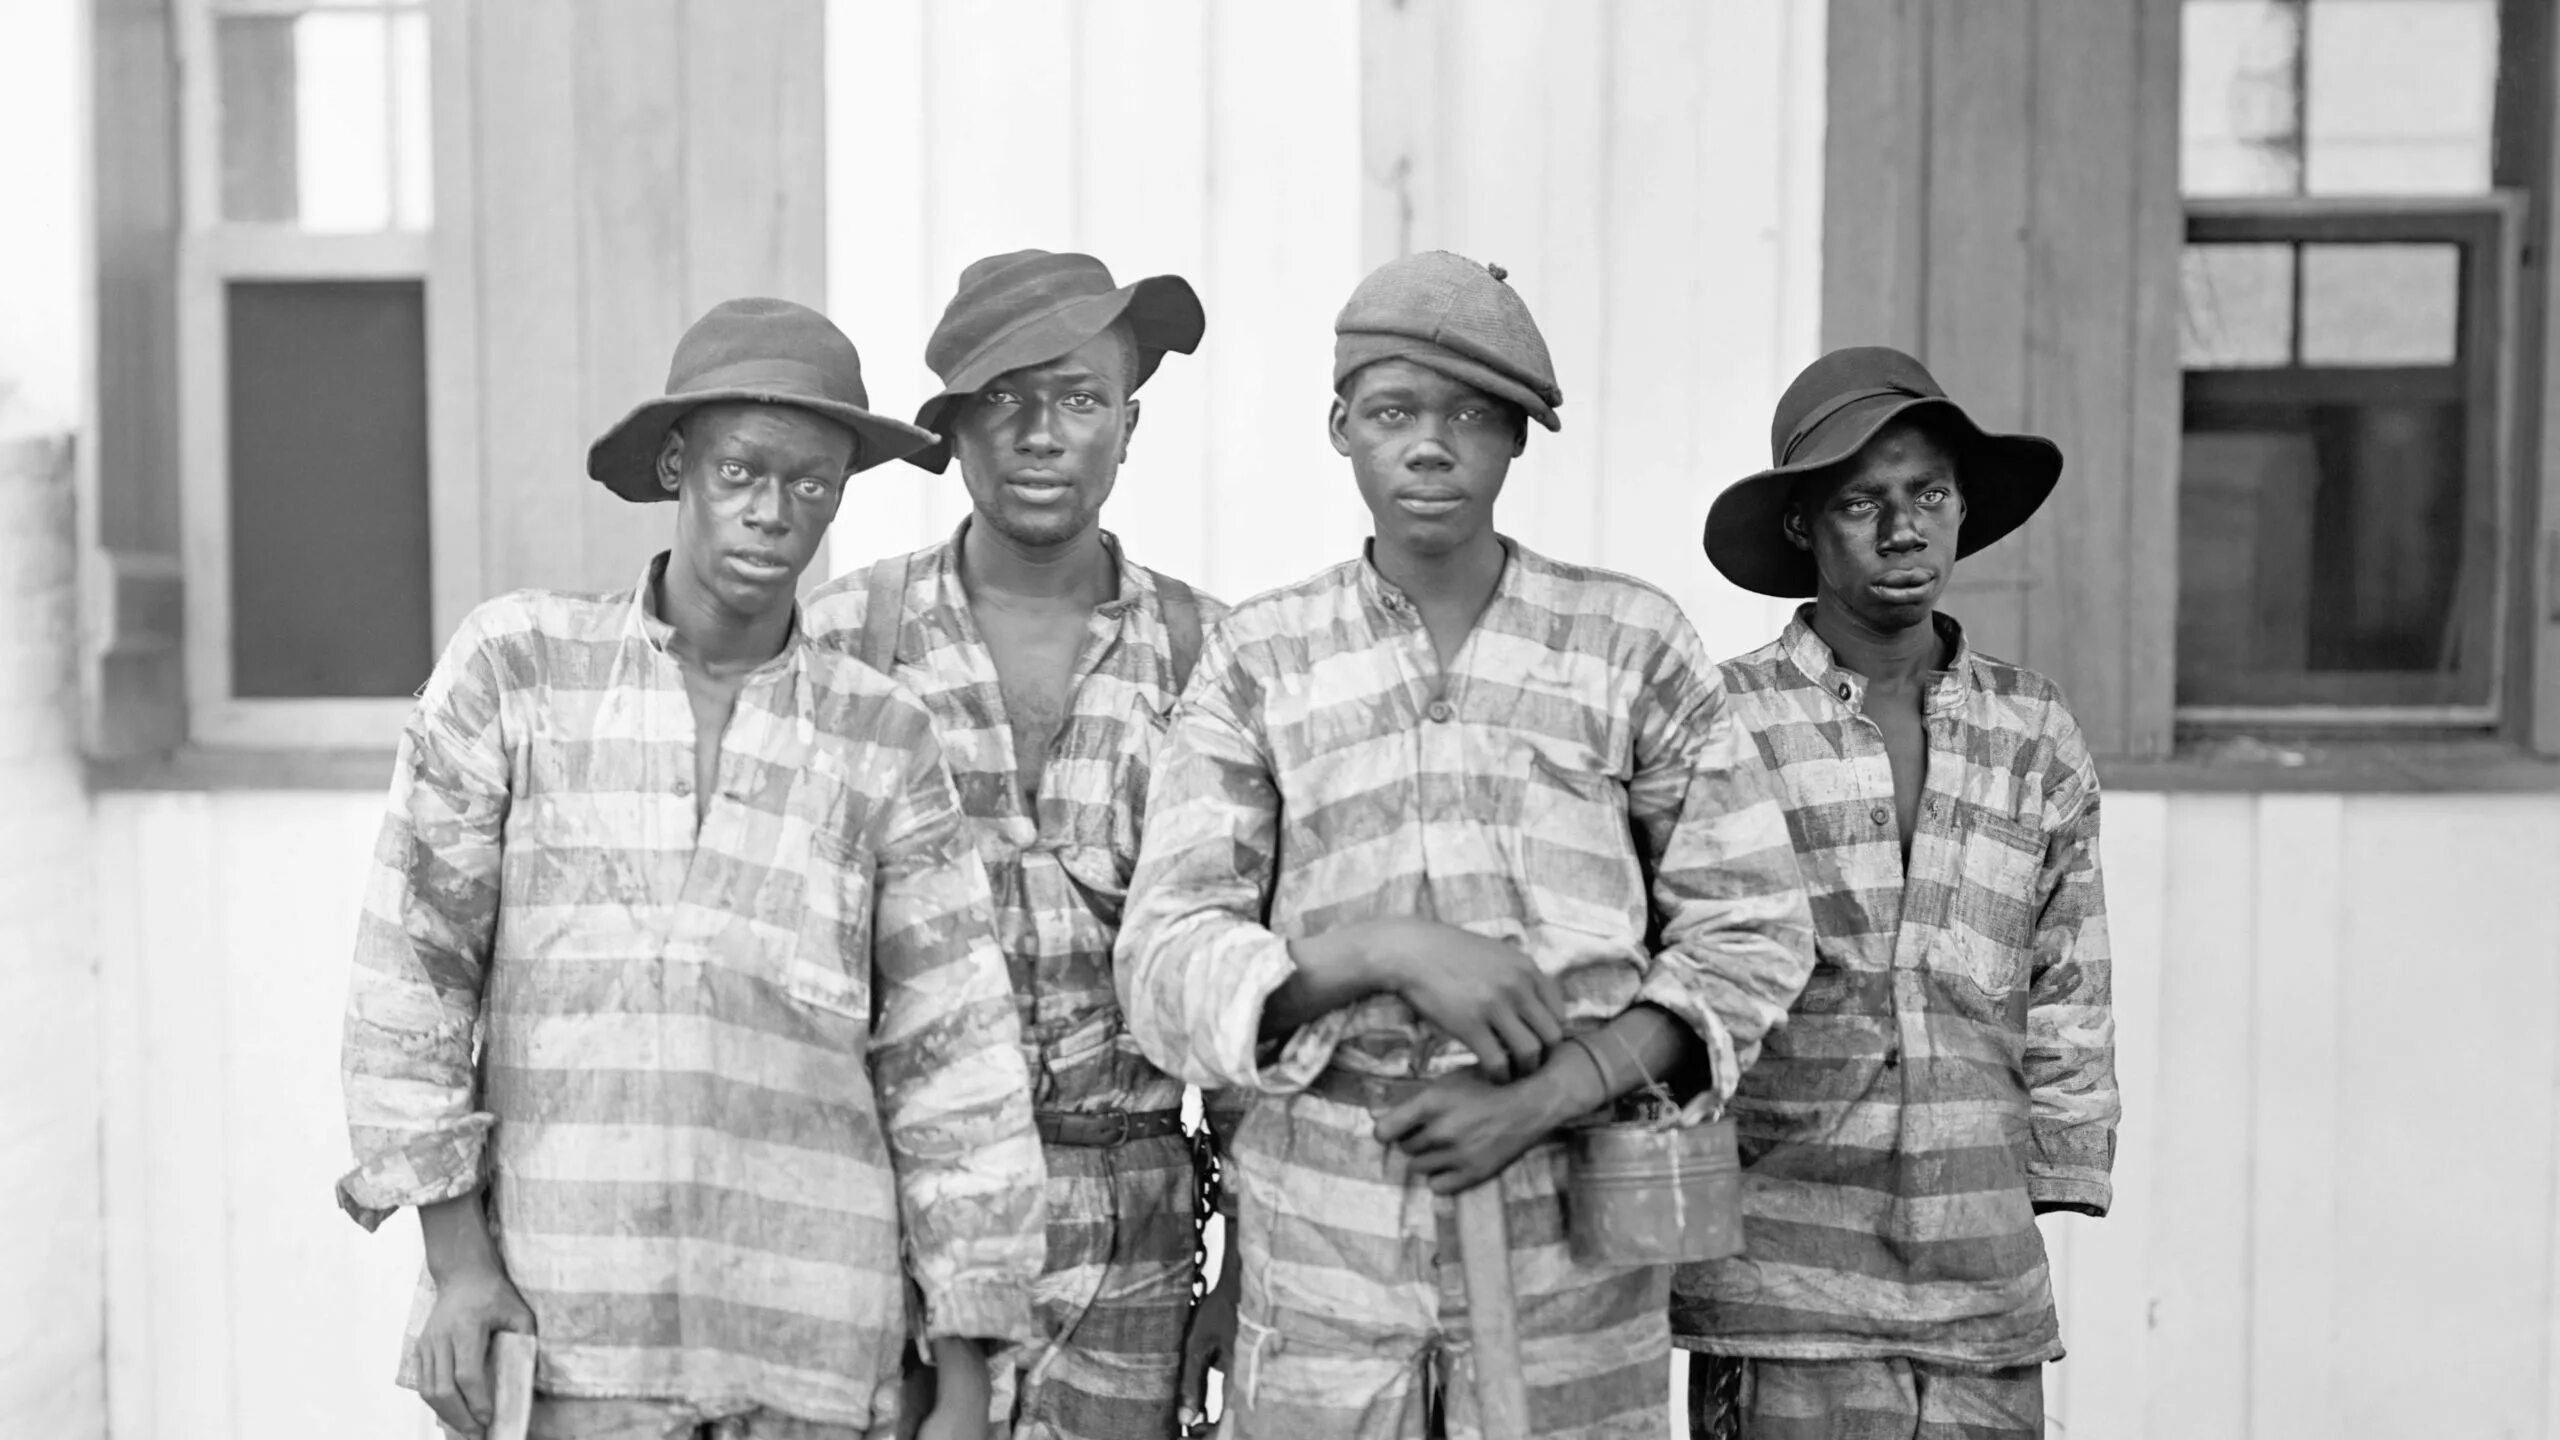 Америка темнокожие. Работорговля в США 18 век. Чернокожие рабы в Америке. Негры на стройке.